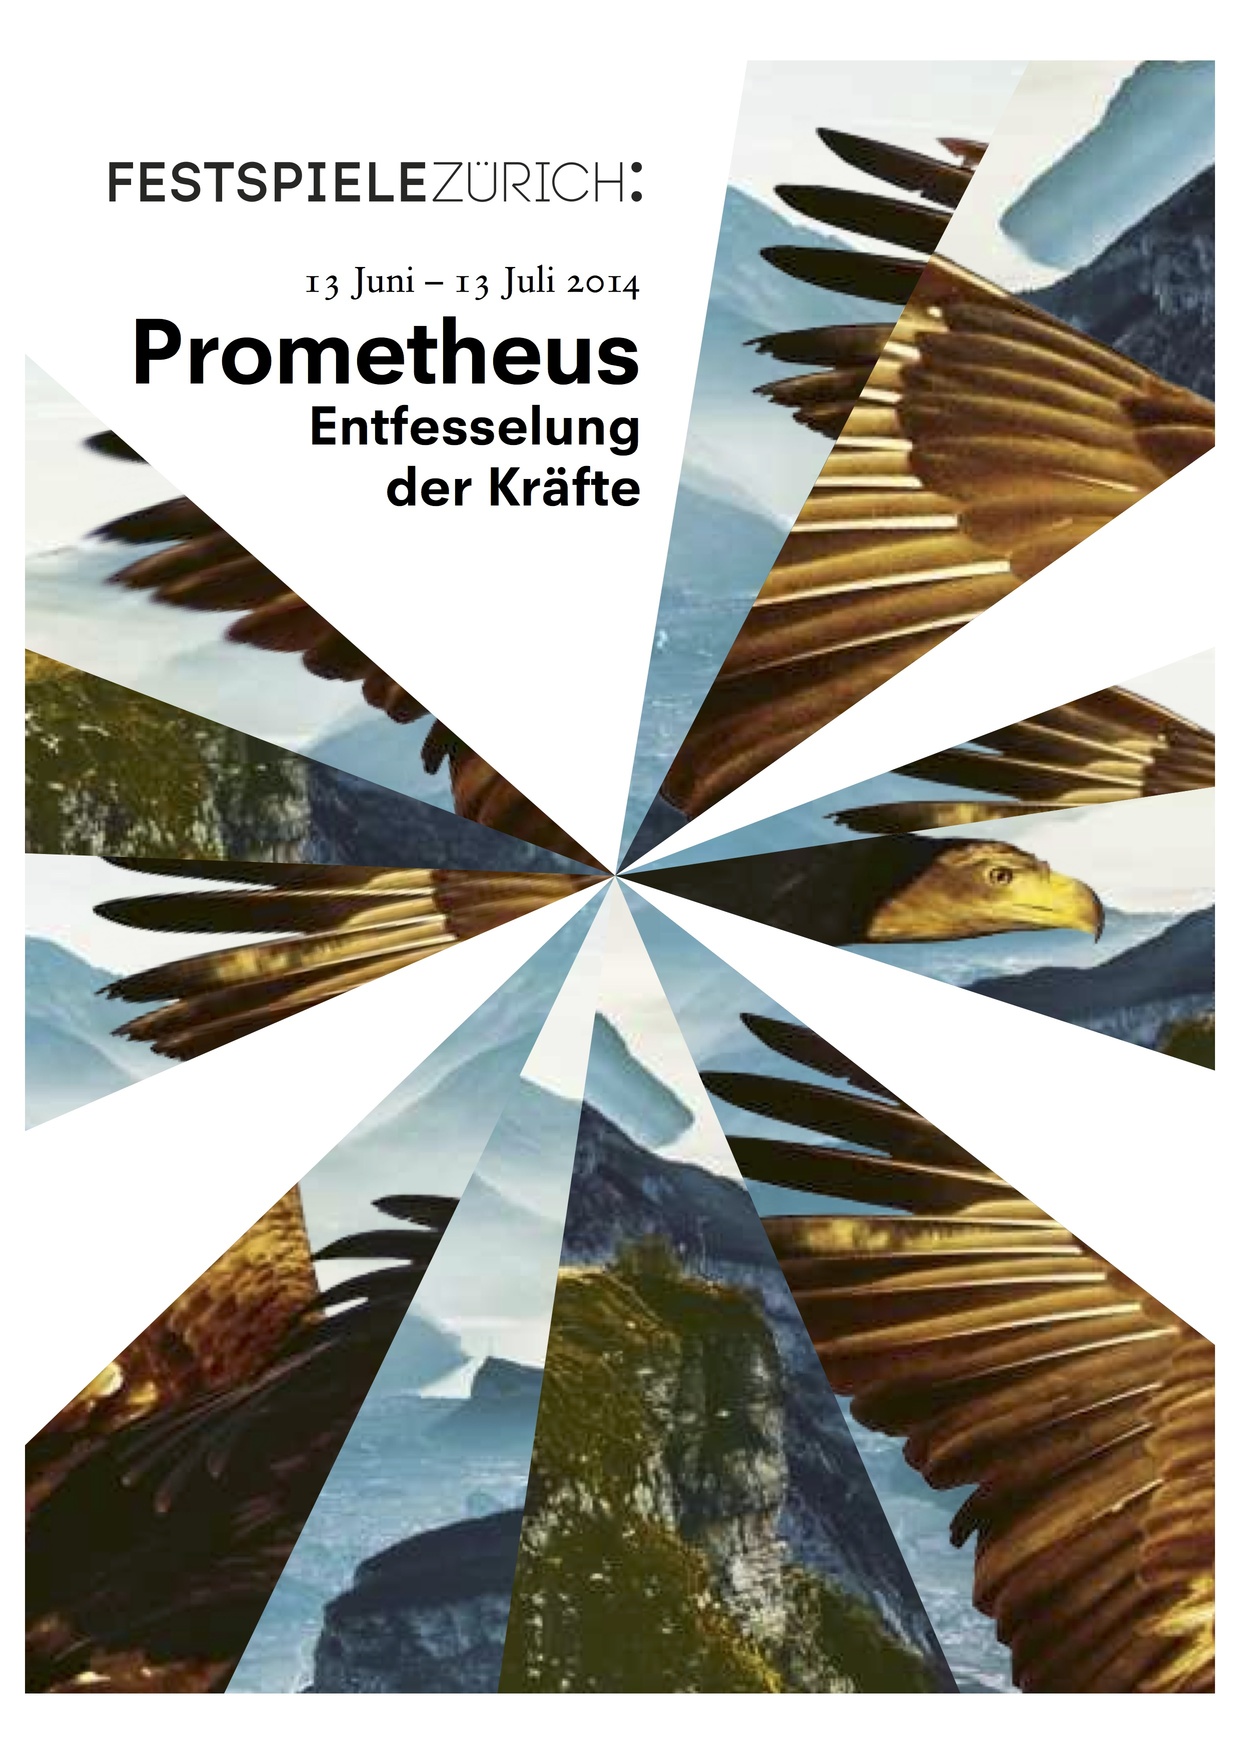 Festspiele Zürich: Prometheus. Entfesselung der Kräfte, Bild: 13.06.-13.07.2014.